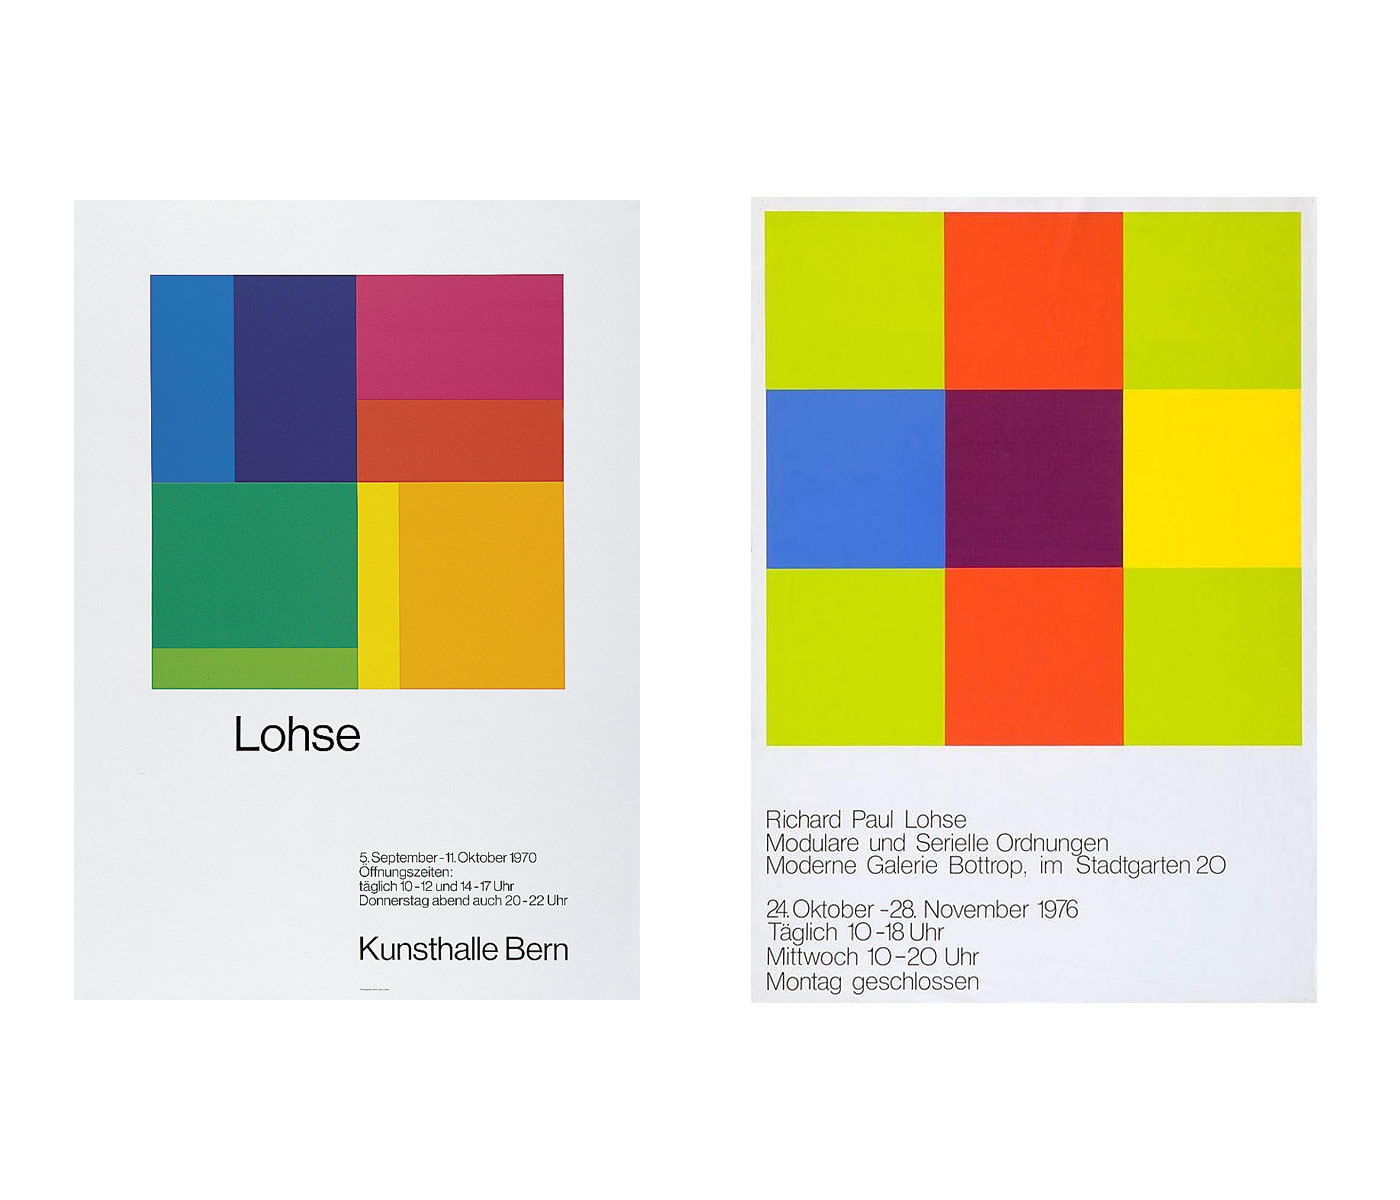 Richard Paul Lohse: Lohse - Kunsthalle Bern, 1970 / Modulare und Serielle Ordnungen - Moderne Galerie Bottrop, 1976